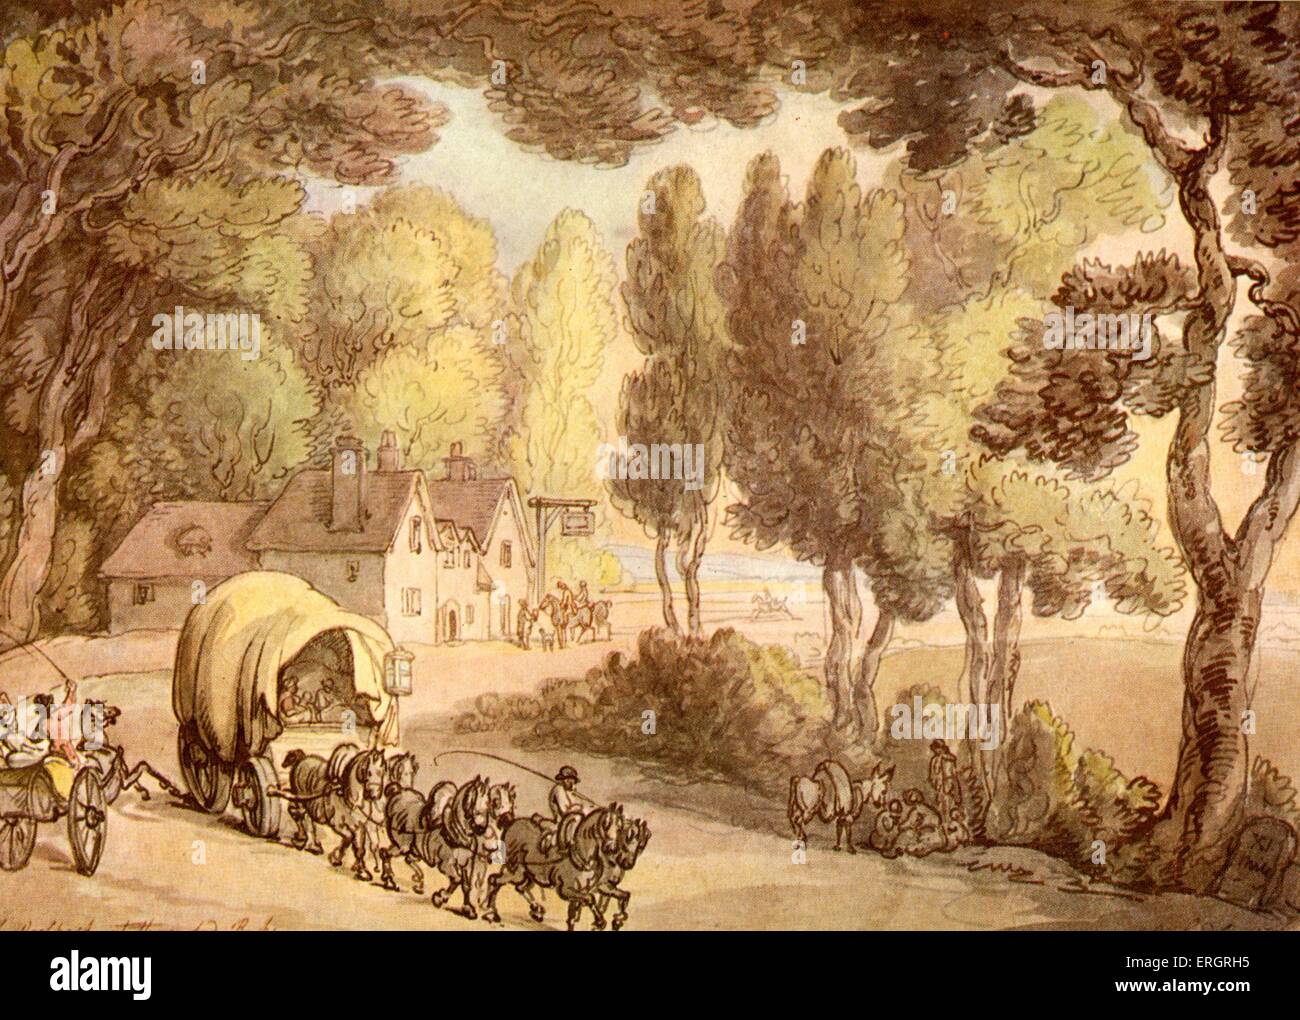 Woolpack Inn, Hungerford, Aquarell von Thomas Rowlandson, 14. Juli 1756 - 22. April 1827.  Pferde, Wagen.  Vom Rand des Wassers. Stockfoto